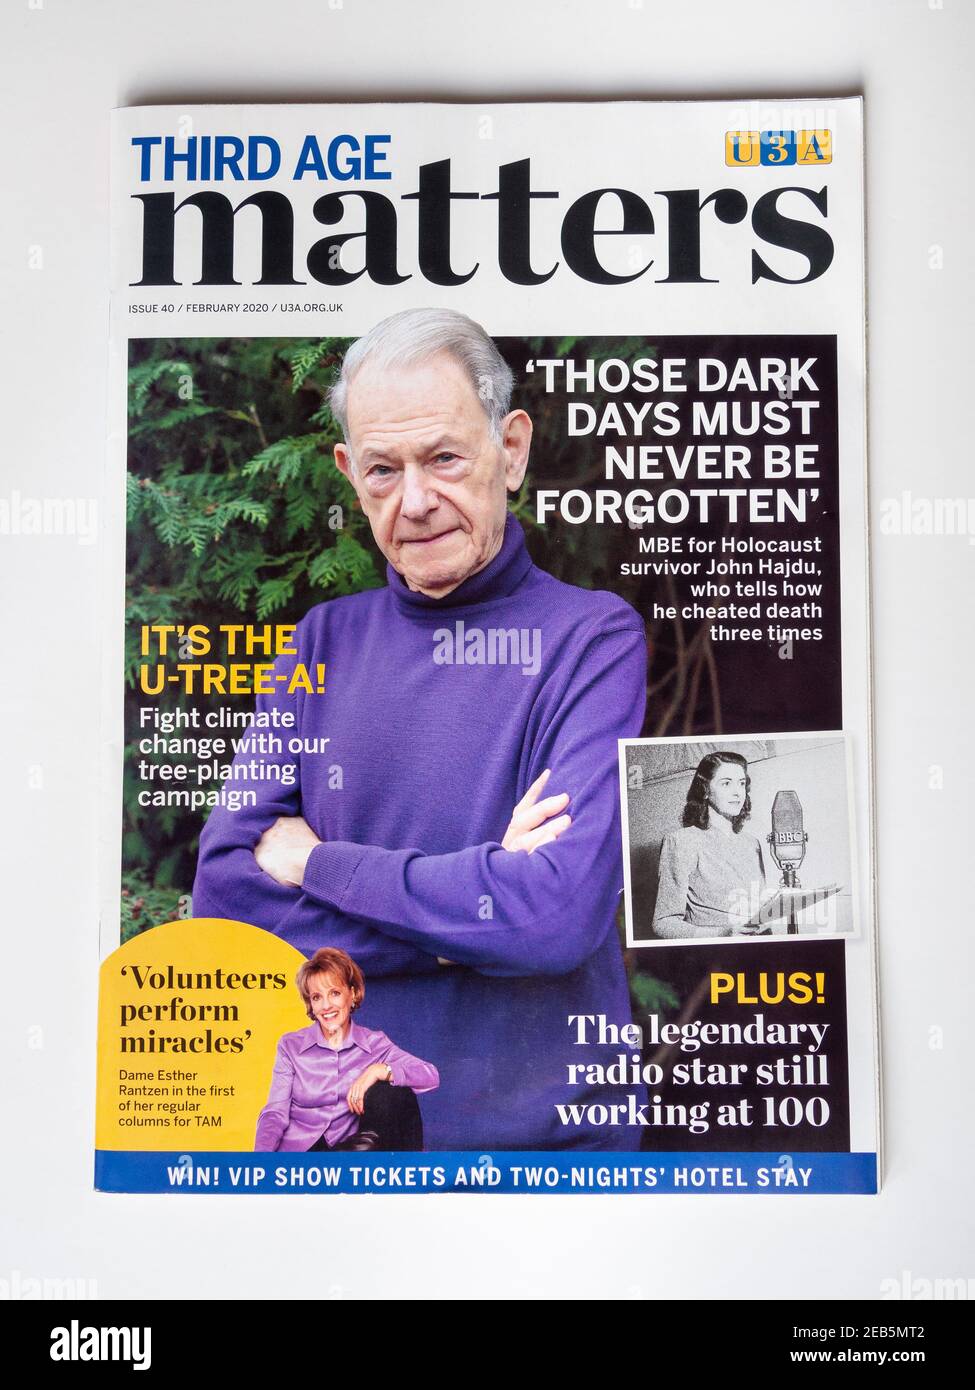 Third Age Matters, la rivista nazionale per i membri dell'Università della terza età, meglio conosciuta come U3A. Foto Stock